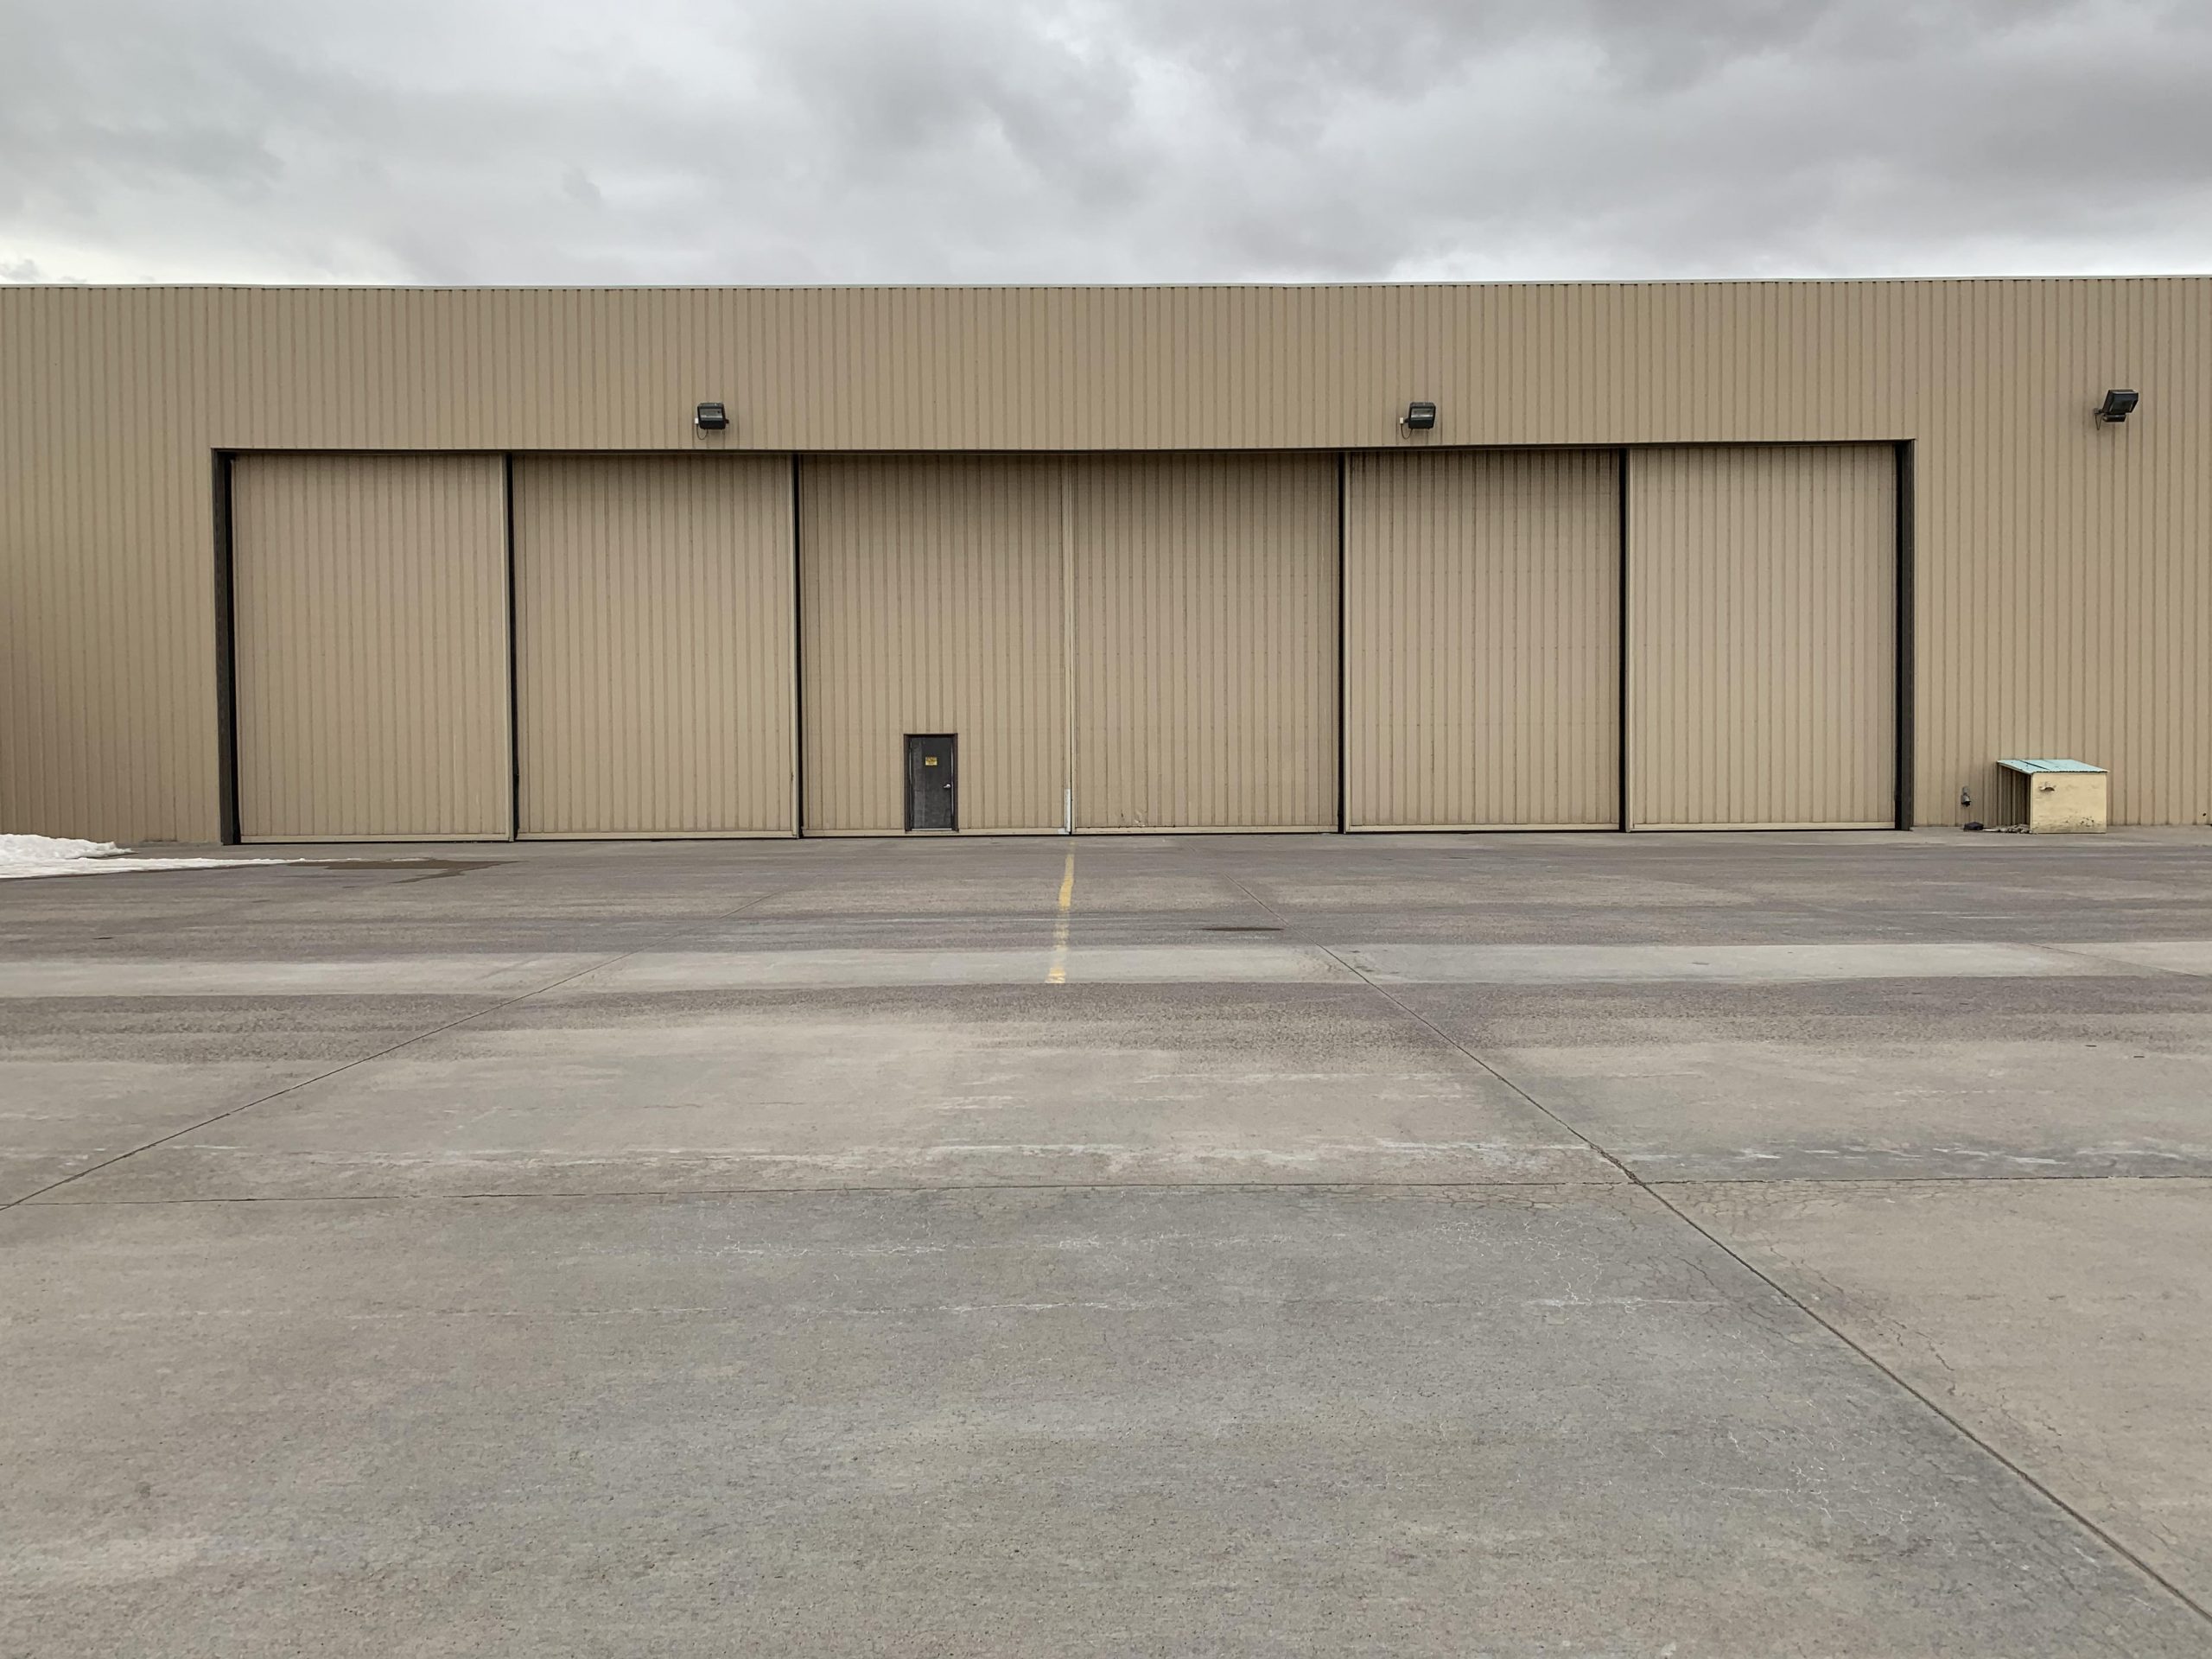 80 ft. Hangar Door for Rental/Lease